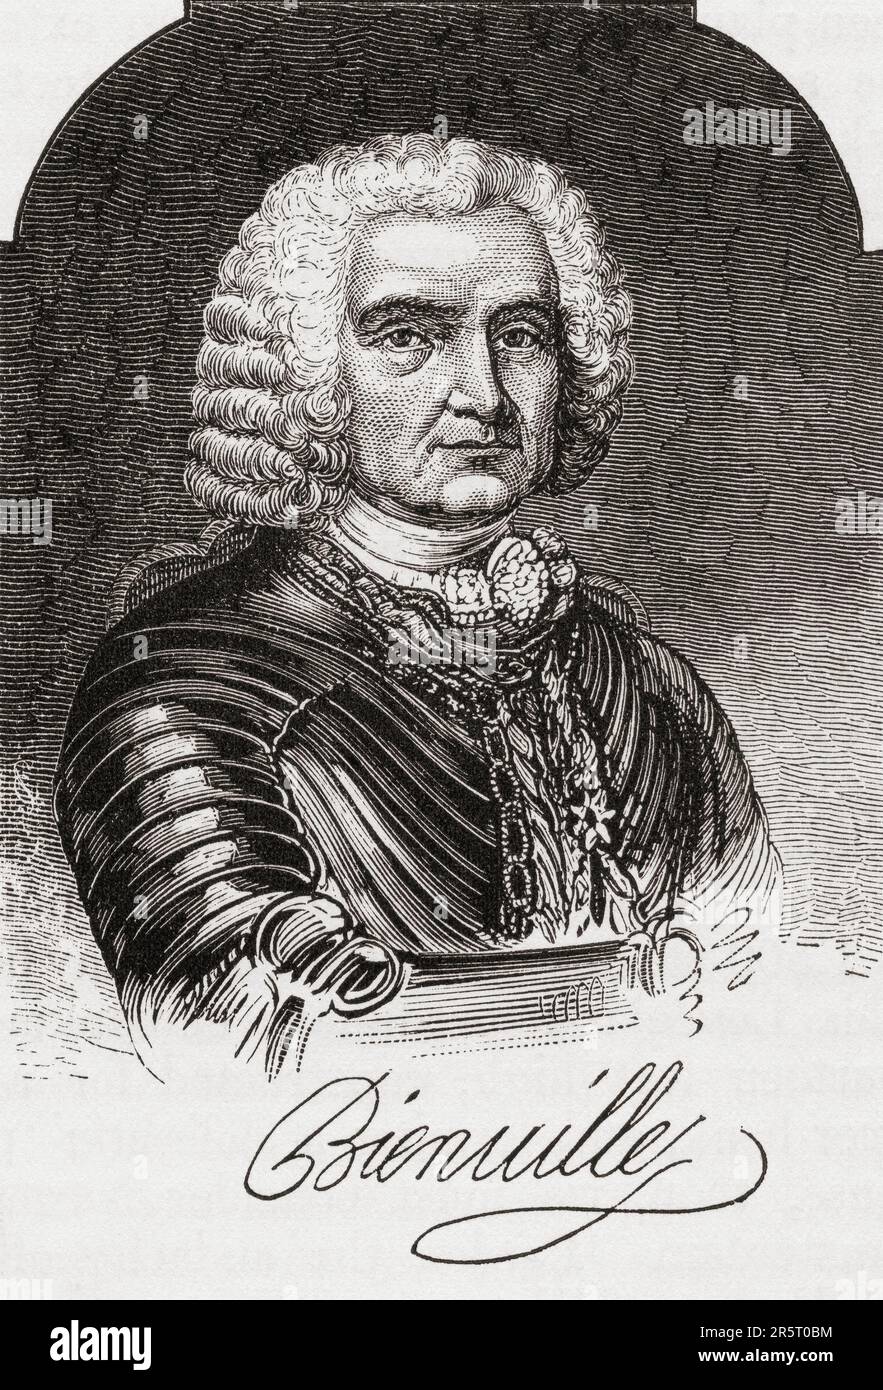 Jean-Baptiste le Moyne de Bienville, 1680 – 1767, alias Sieur de Bienville. Portrait et signature. Administrateur colonial français en Nouvelle-France. De l'Amérique revisité: De la baie de New York au golfe du Mexique, publié en 1886. Banque D'Images